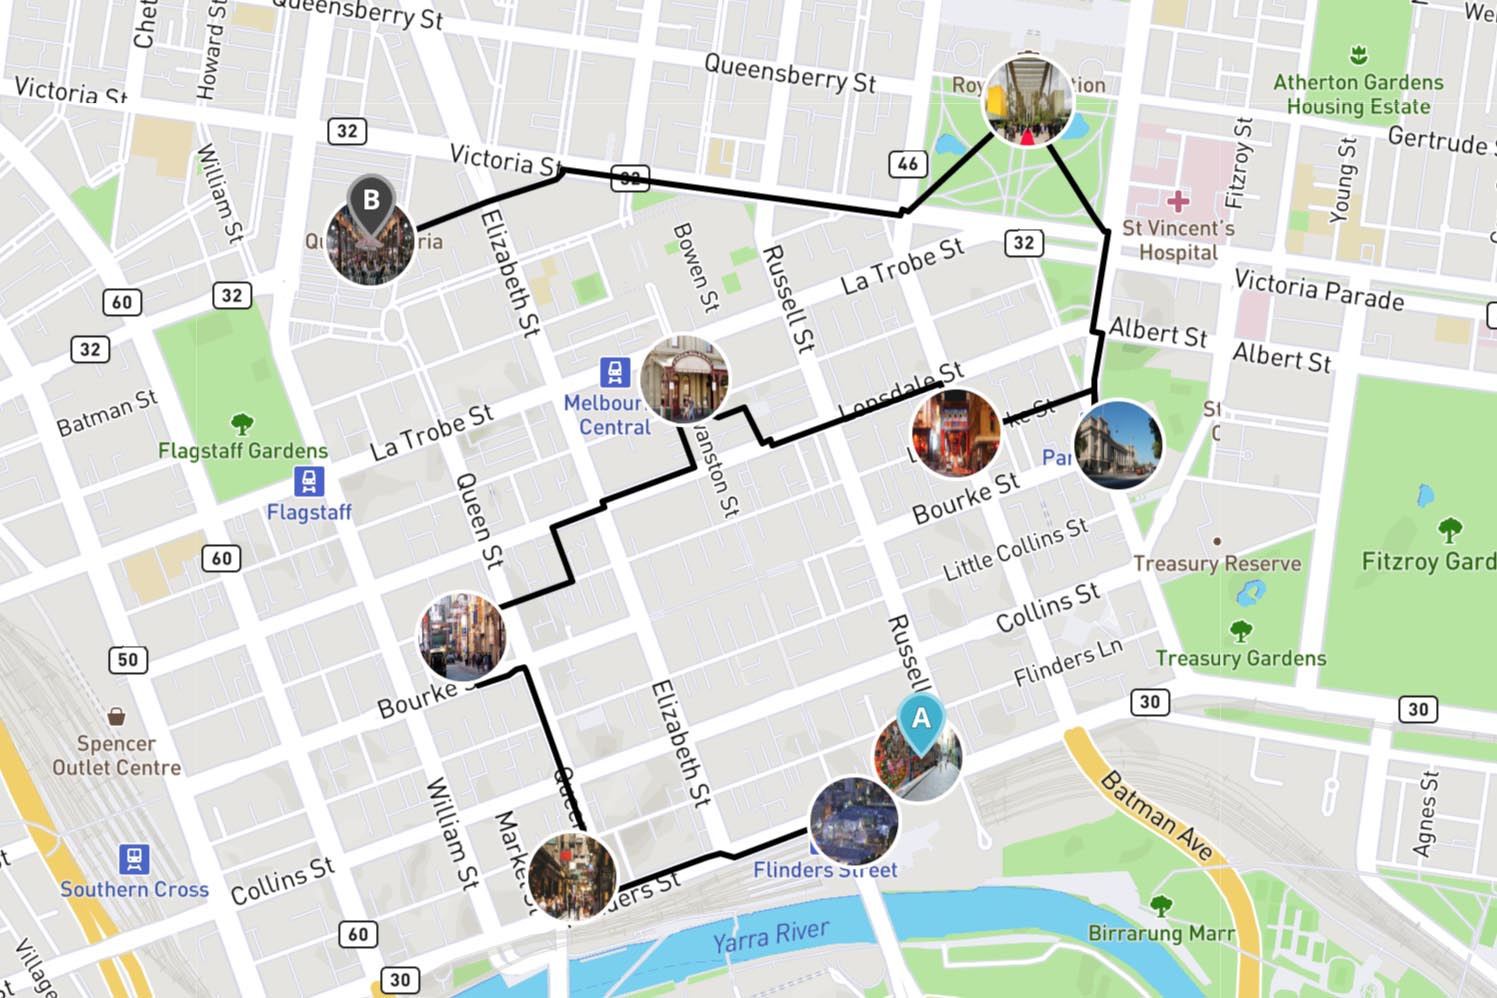 Google Maps Walking Tour